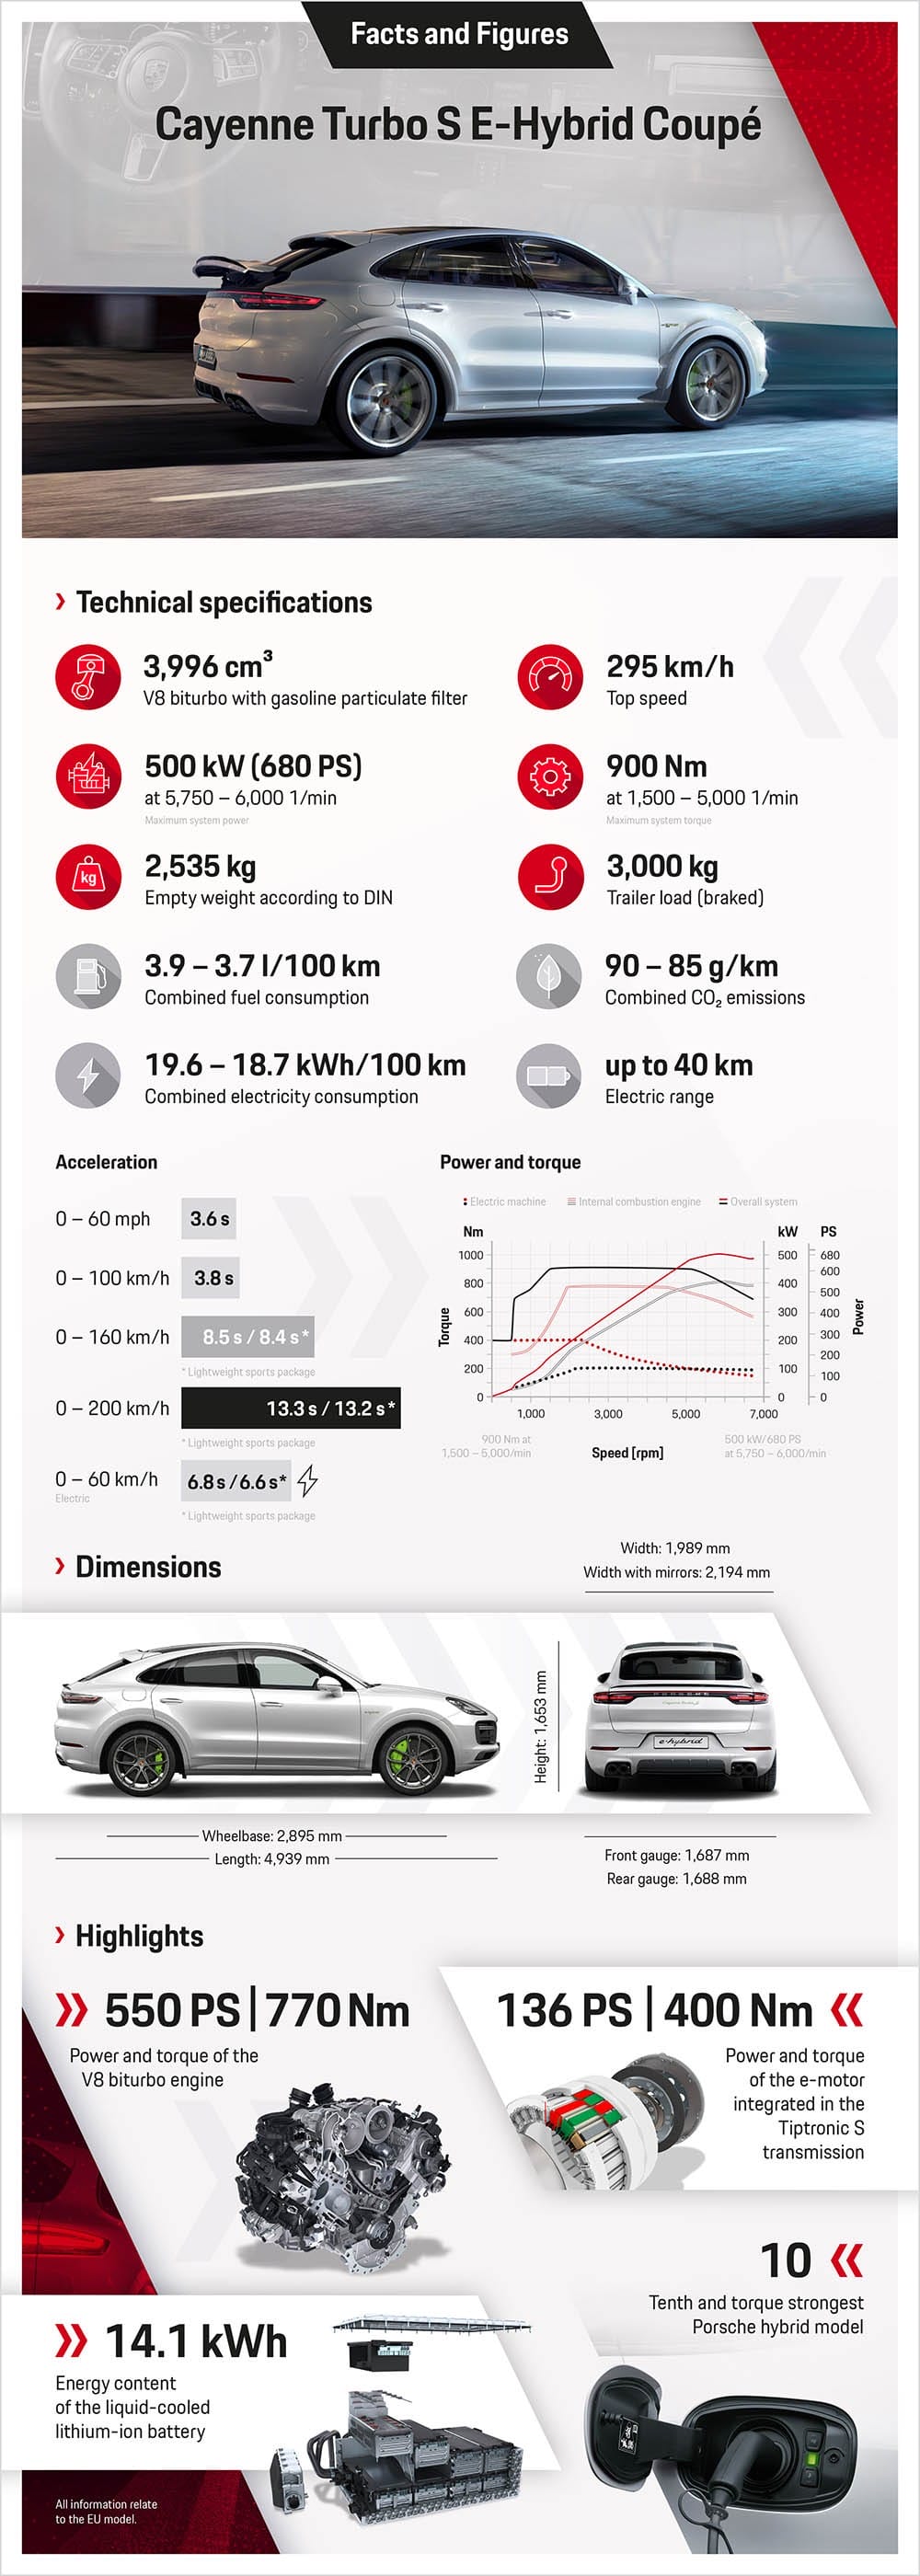 Ra mắt “quân đầu đàn” Porsche Cayenne Turbo S E-Hybrid 2020 cực mạnh ảnh 10